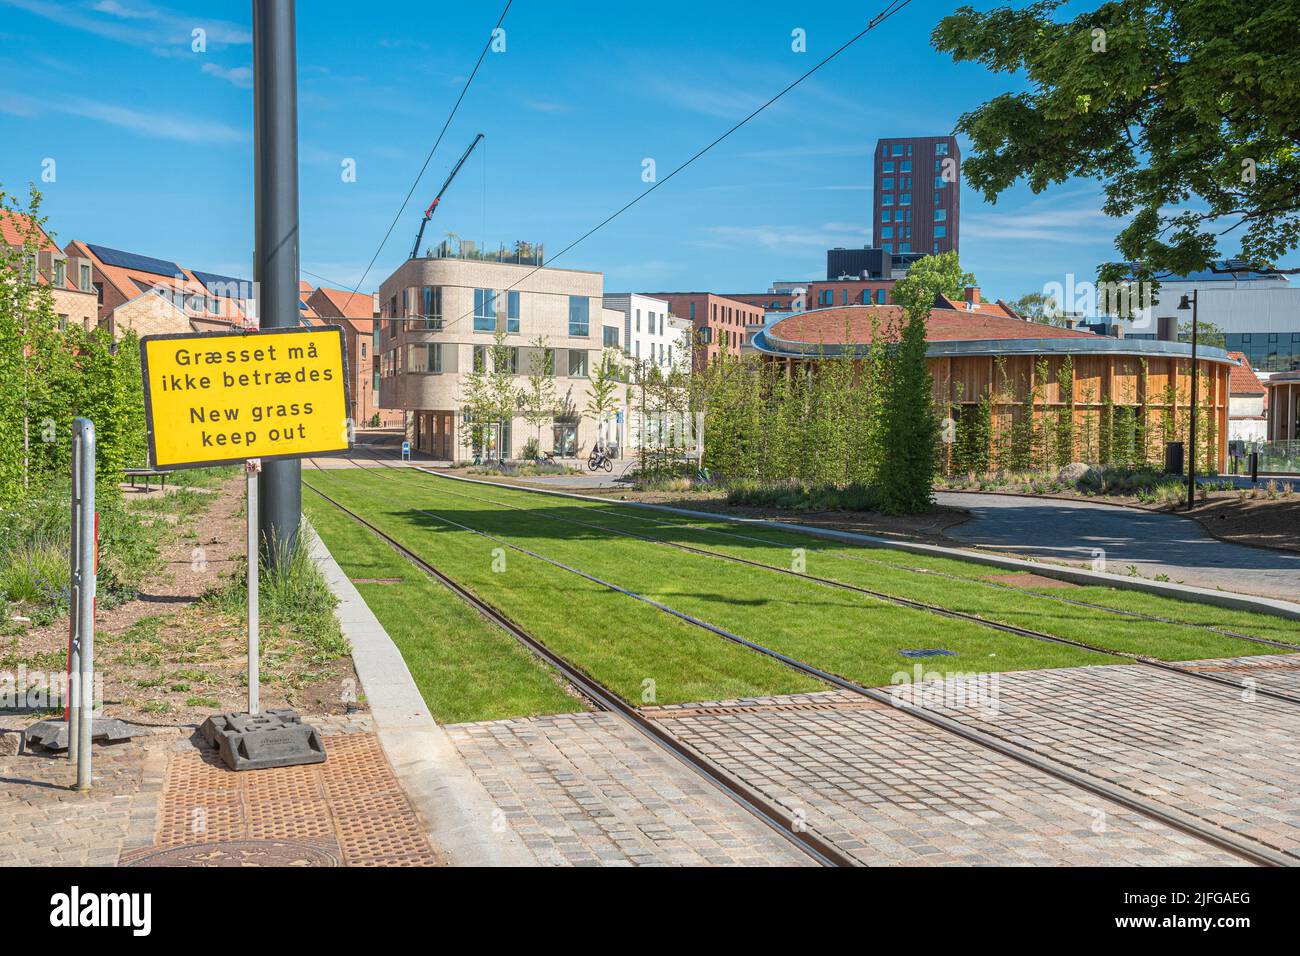 Voies ferrées du tramway ou du trolley-bus sur une route à herbe verte. Réseau électrique de transport public dans la ville centrale d'Odense, Danemark, Europe Banque D'Images